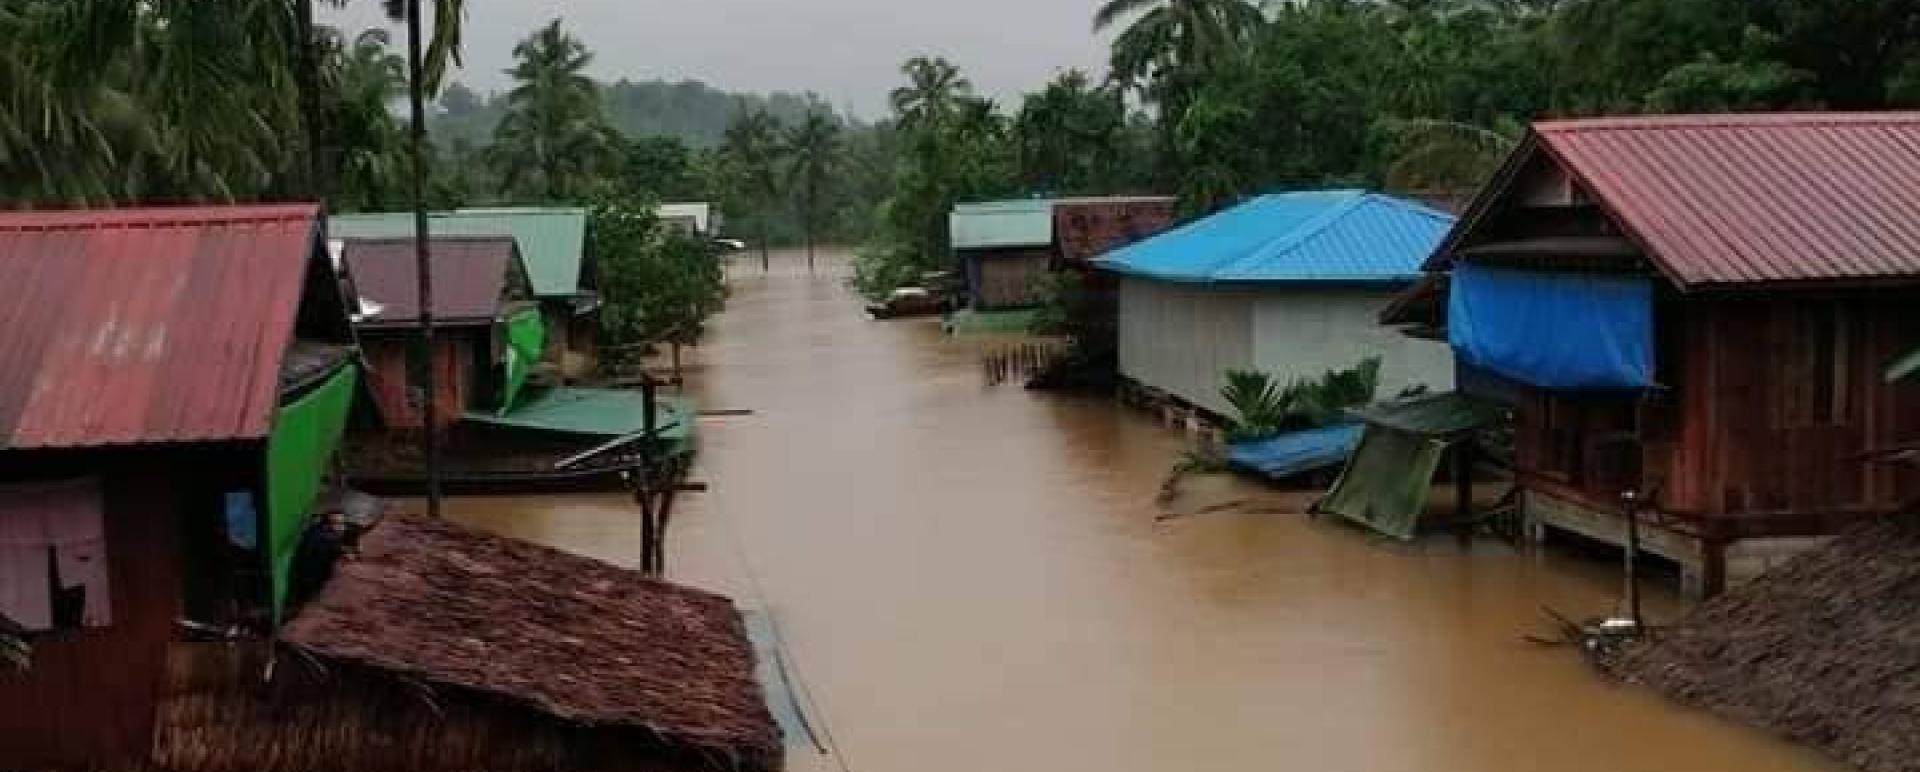 Flood occurs in Ye Phyu Township, Dawei District, Taninthari Region